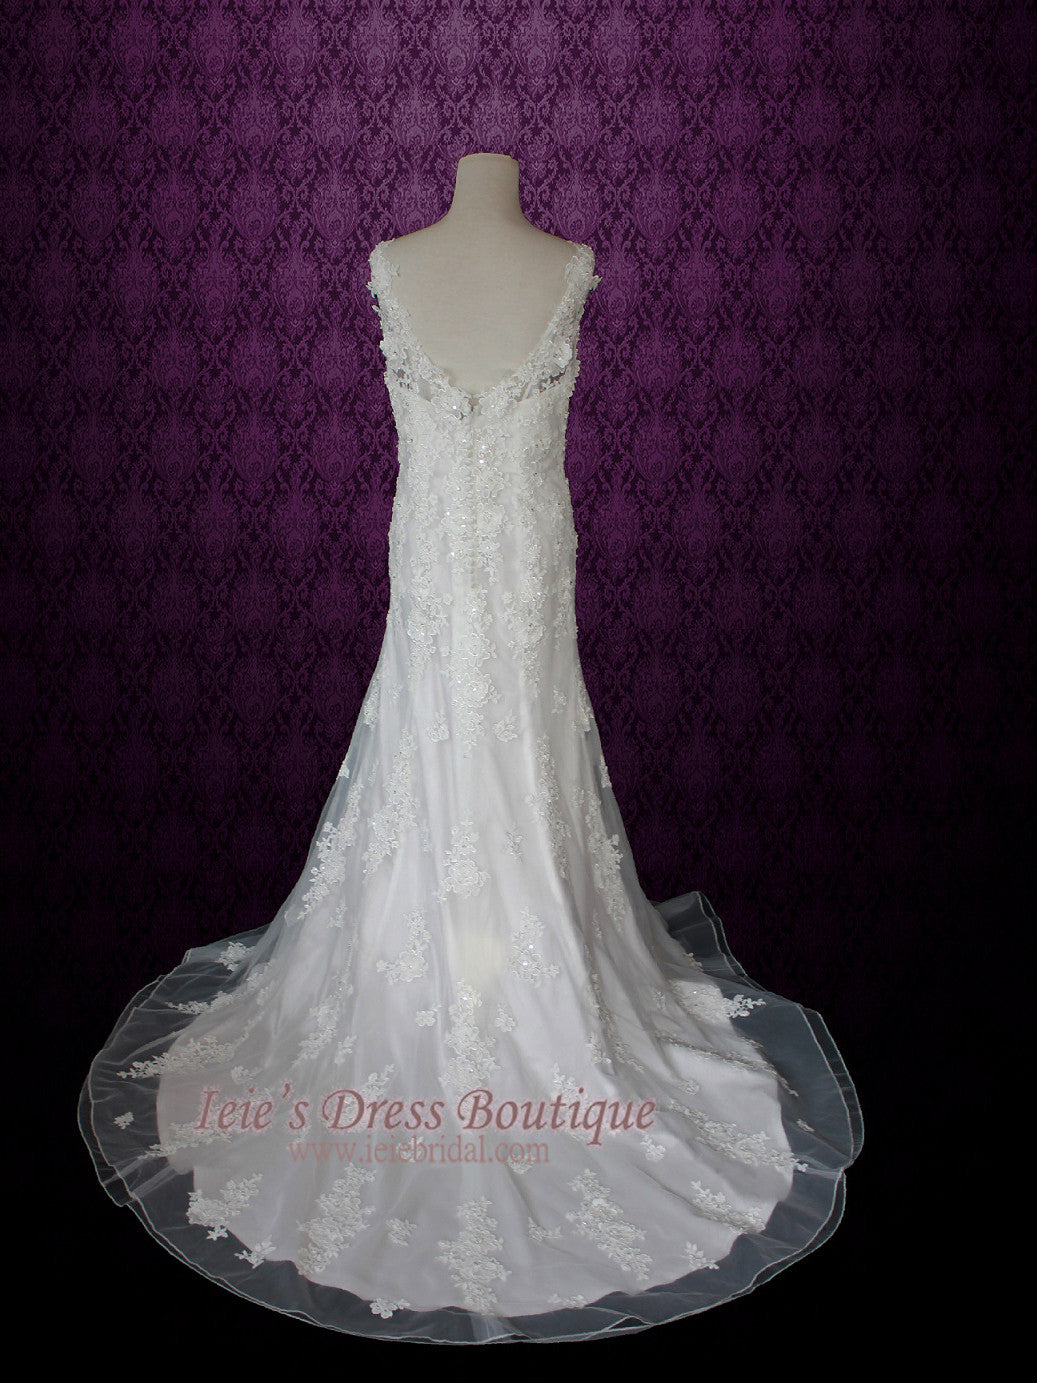 2 Piece Vintage Style Floral Lace Wedding Dress GRISELLE – ieie